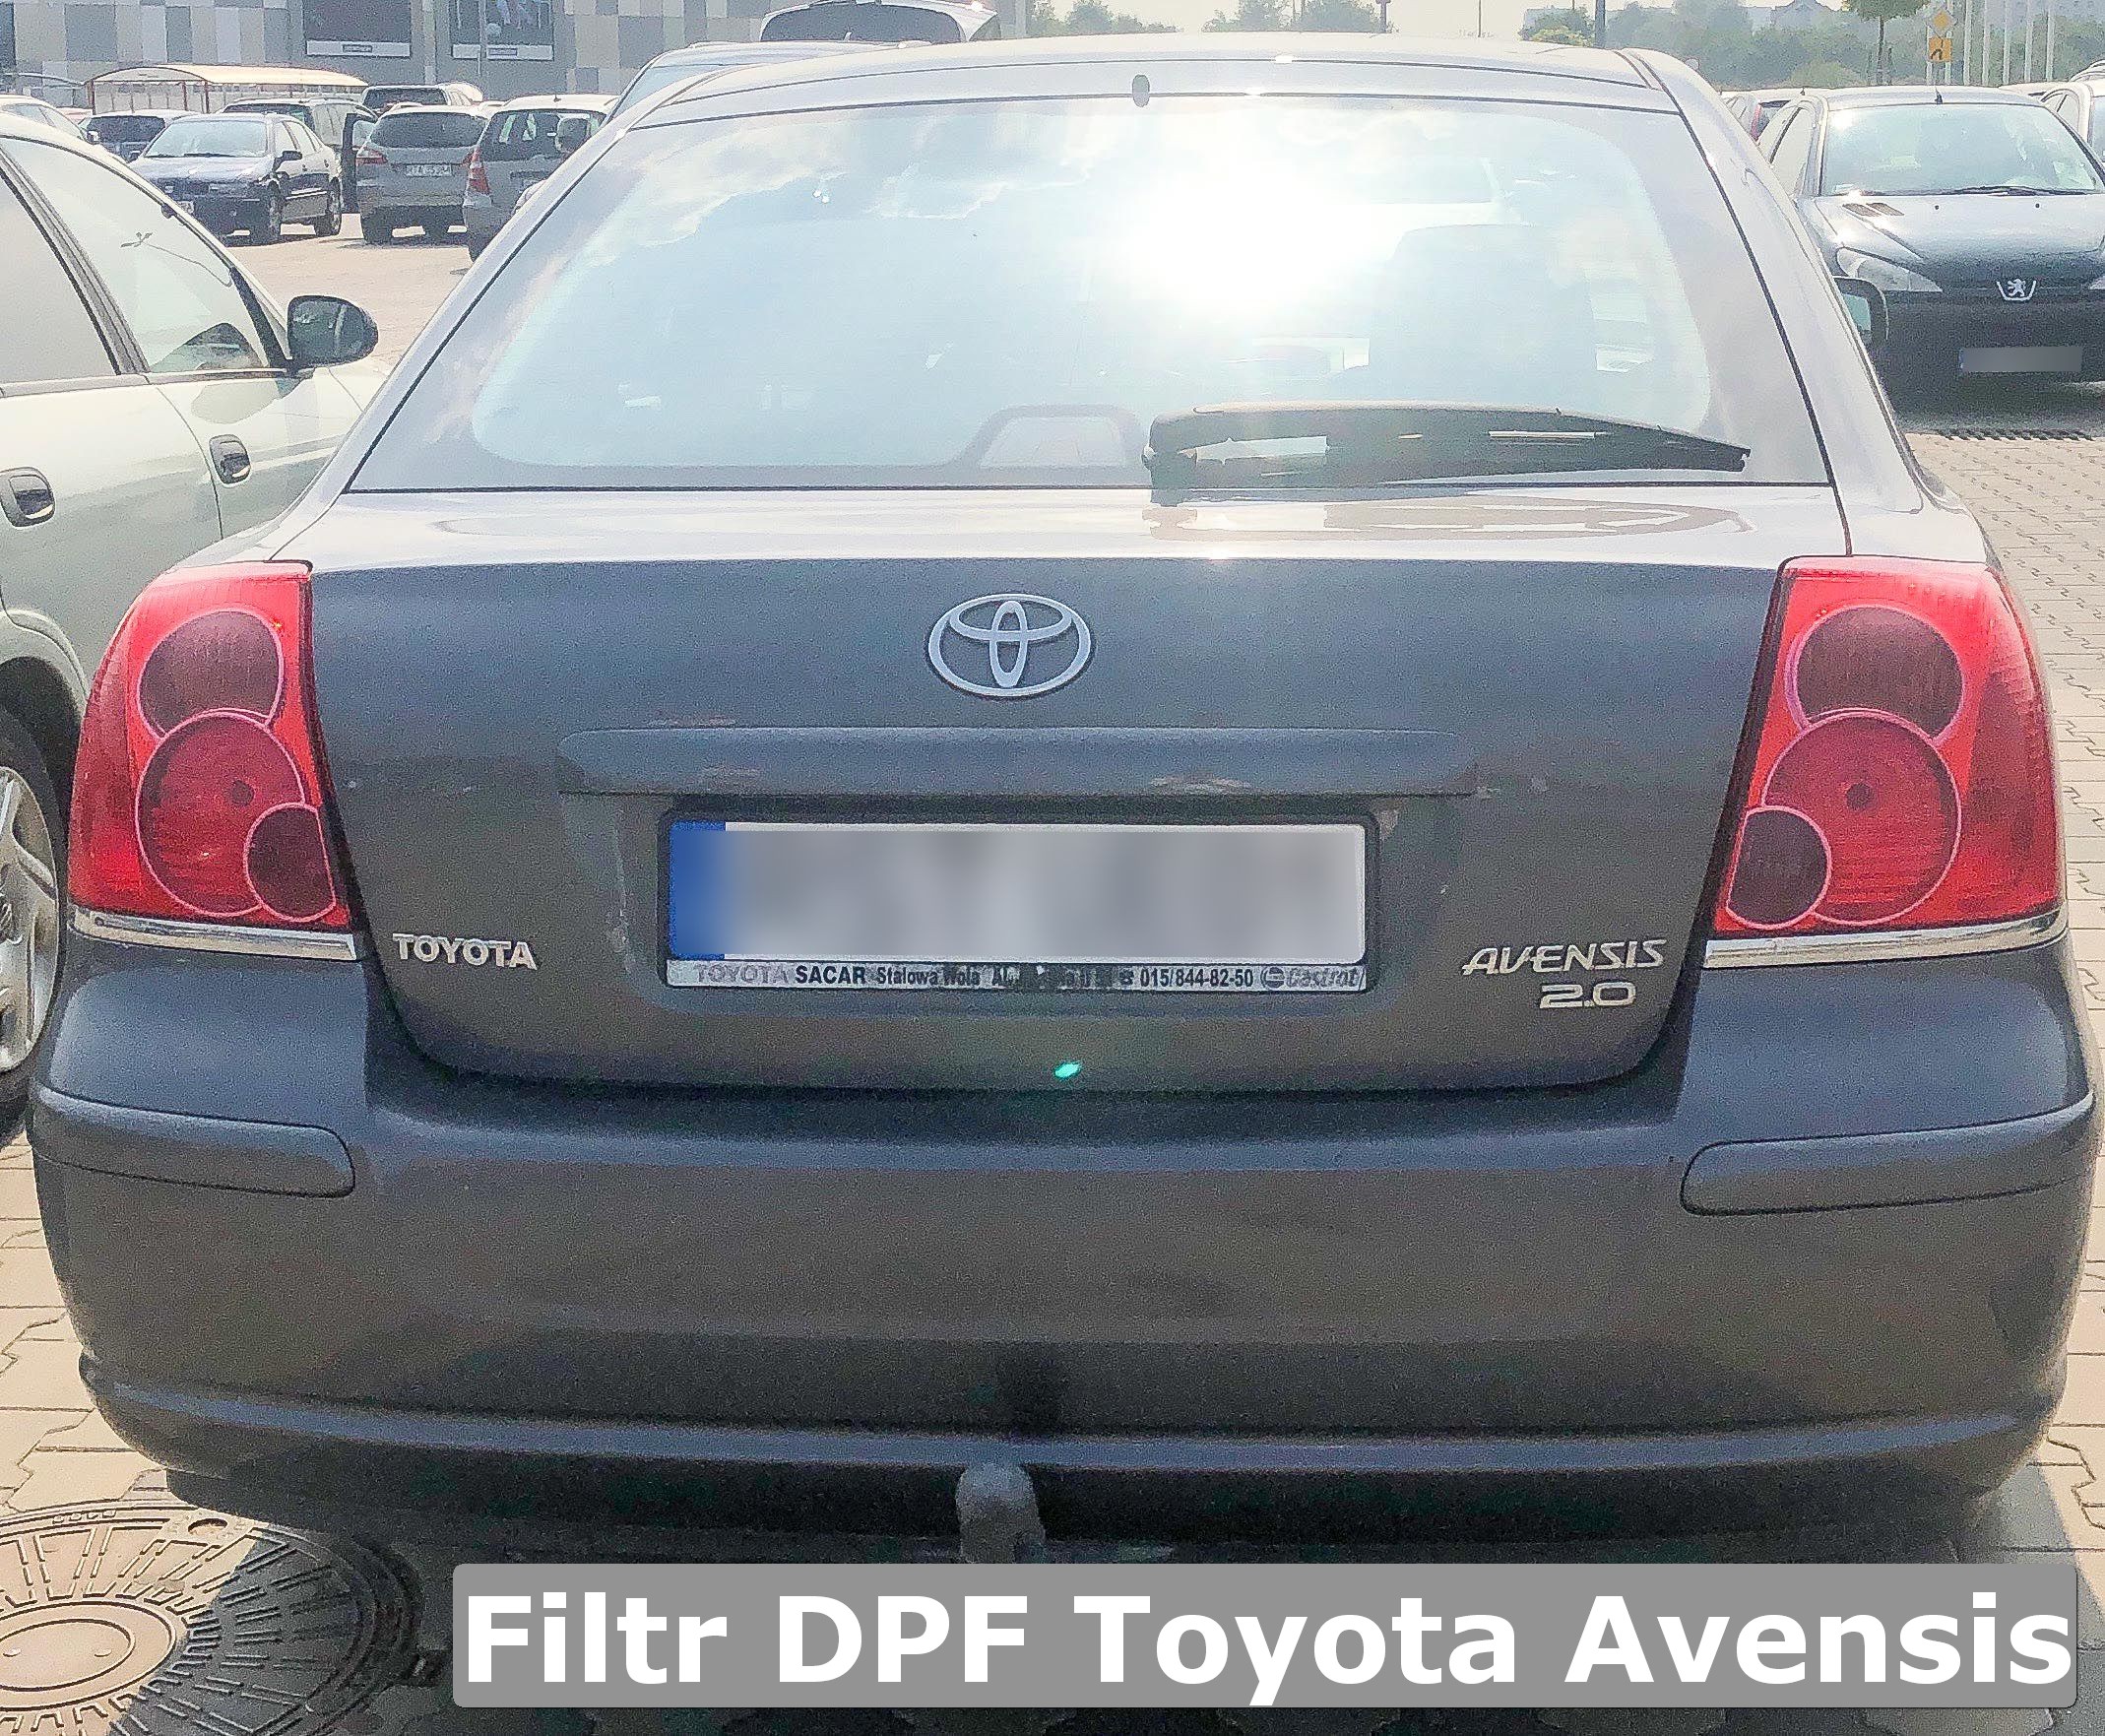 Wypalanie DPF Toyota część 13 filtrydpffap.pl